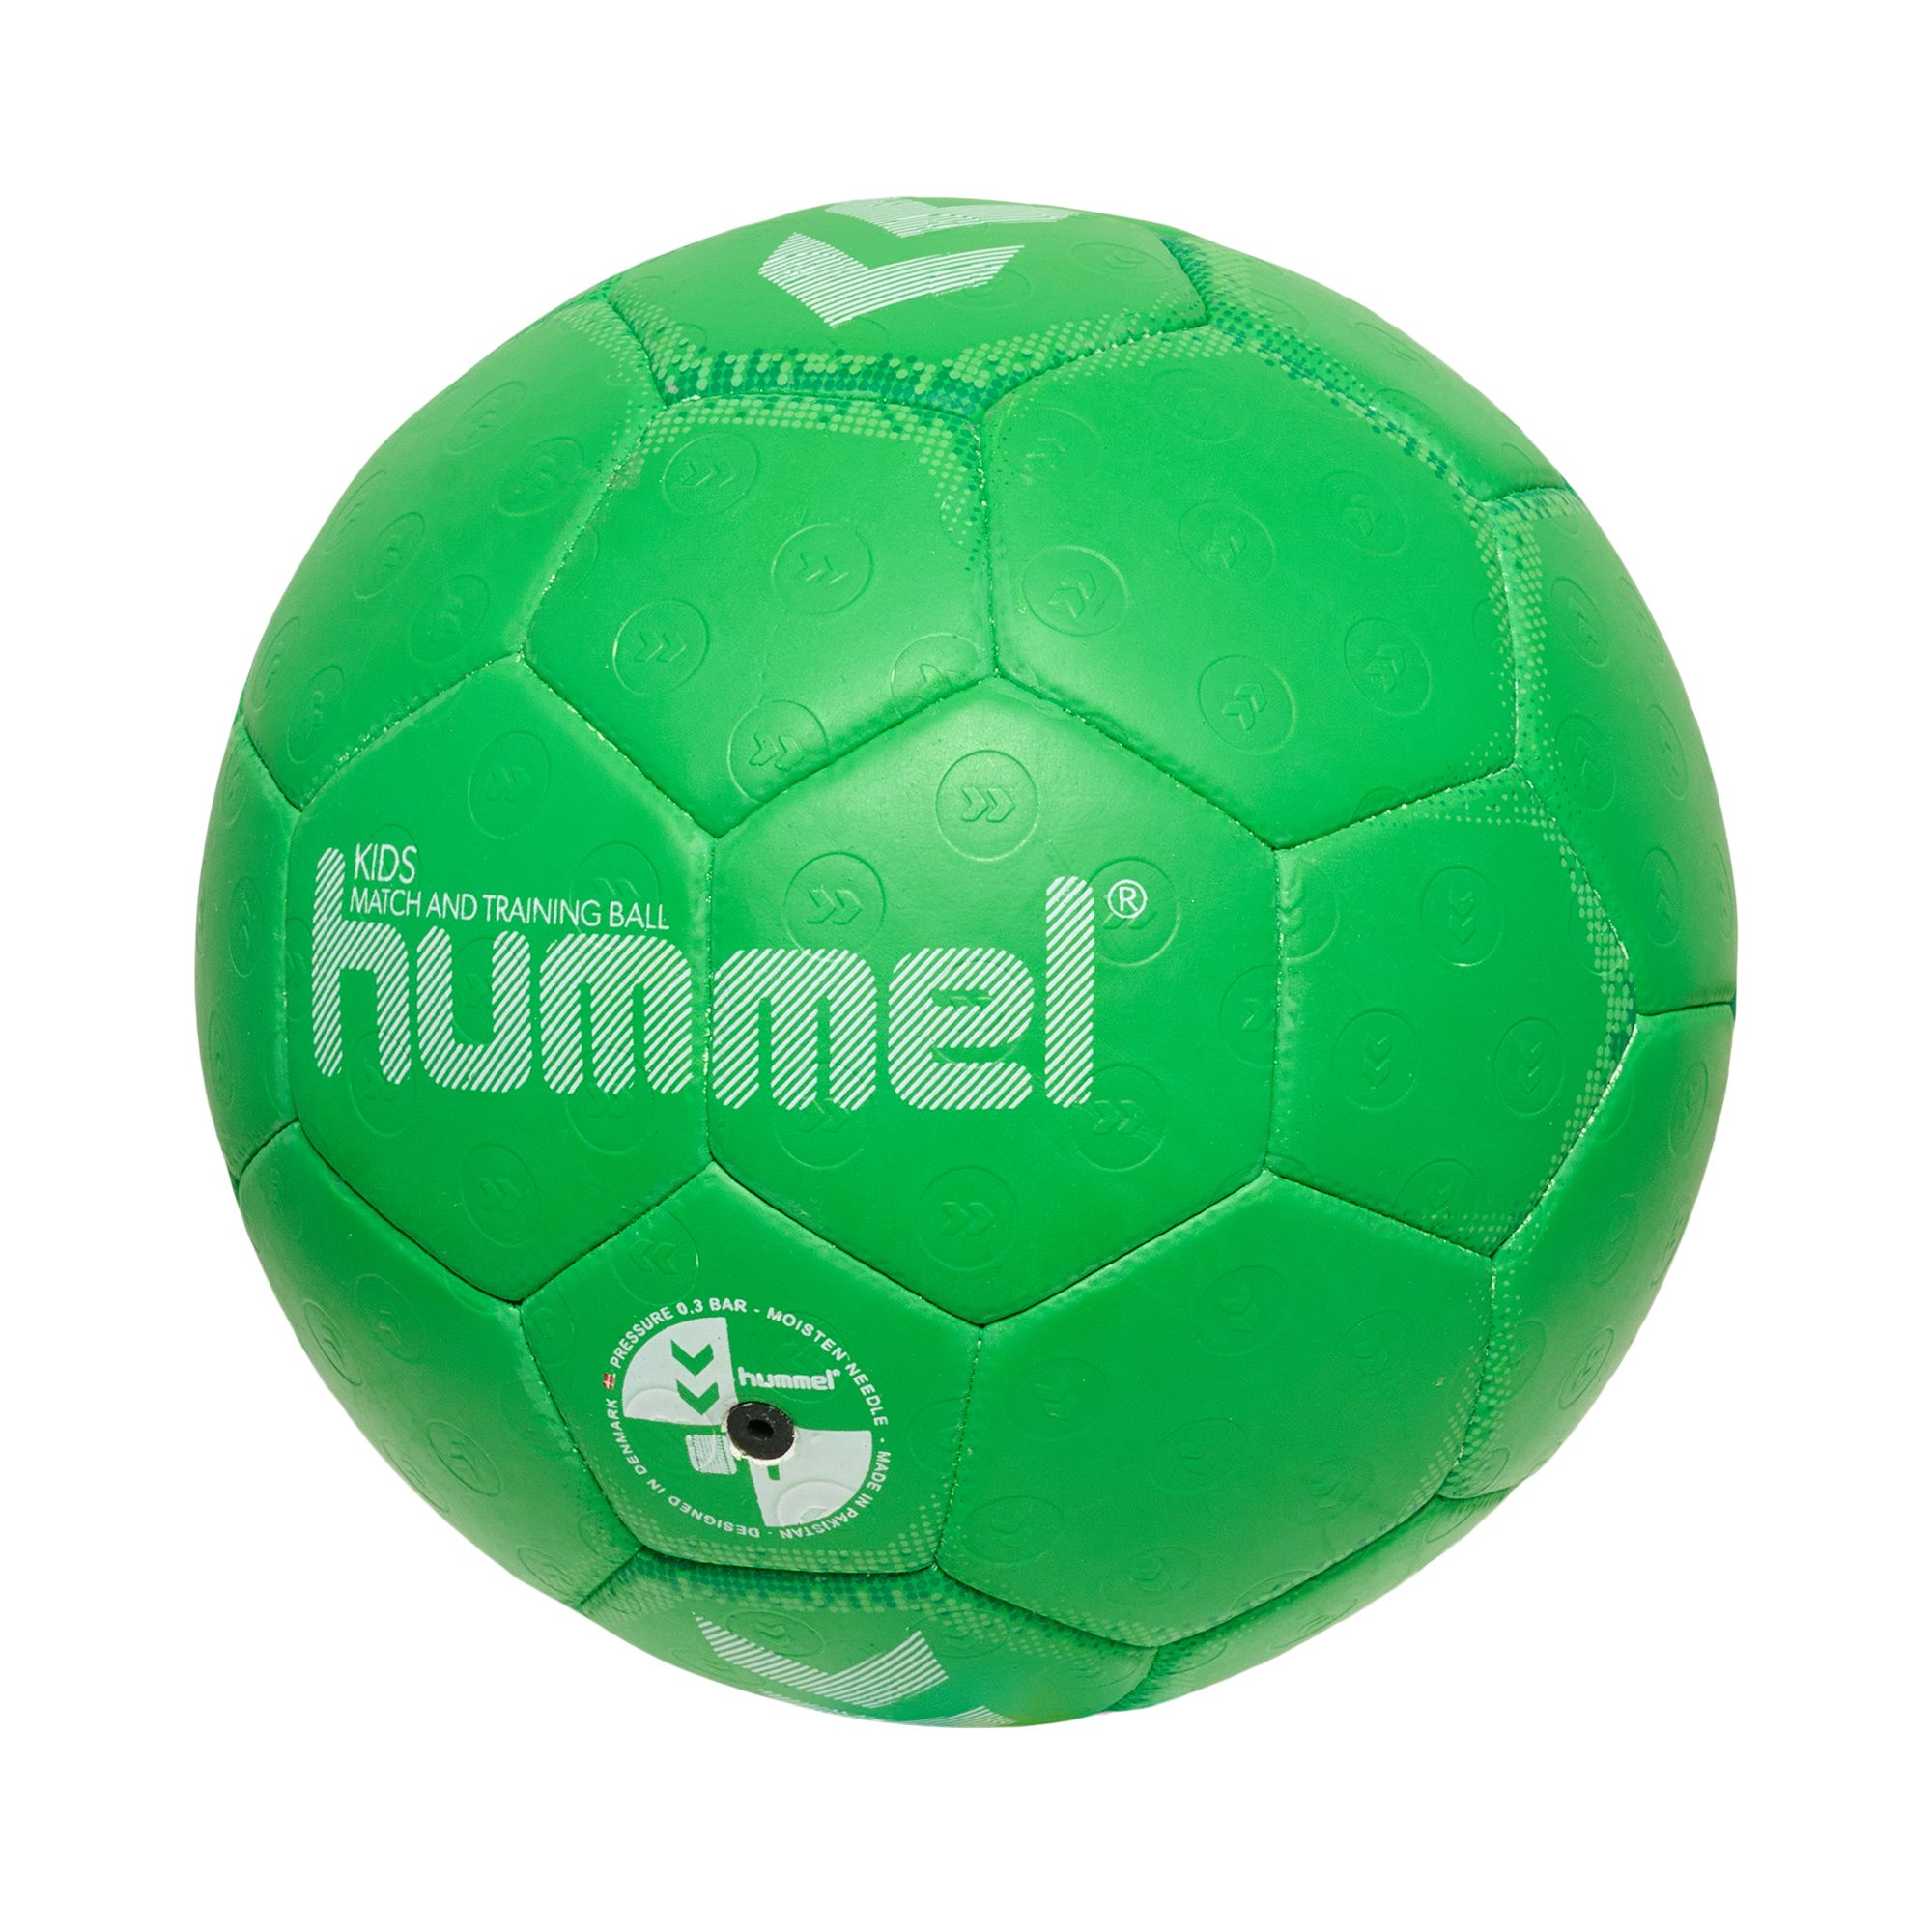 Hummel Kids Handball